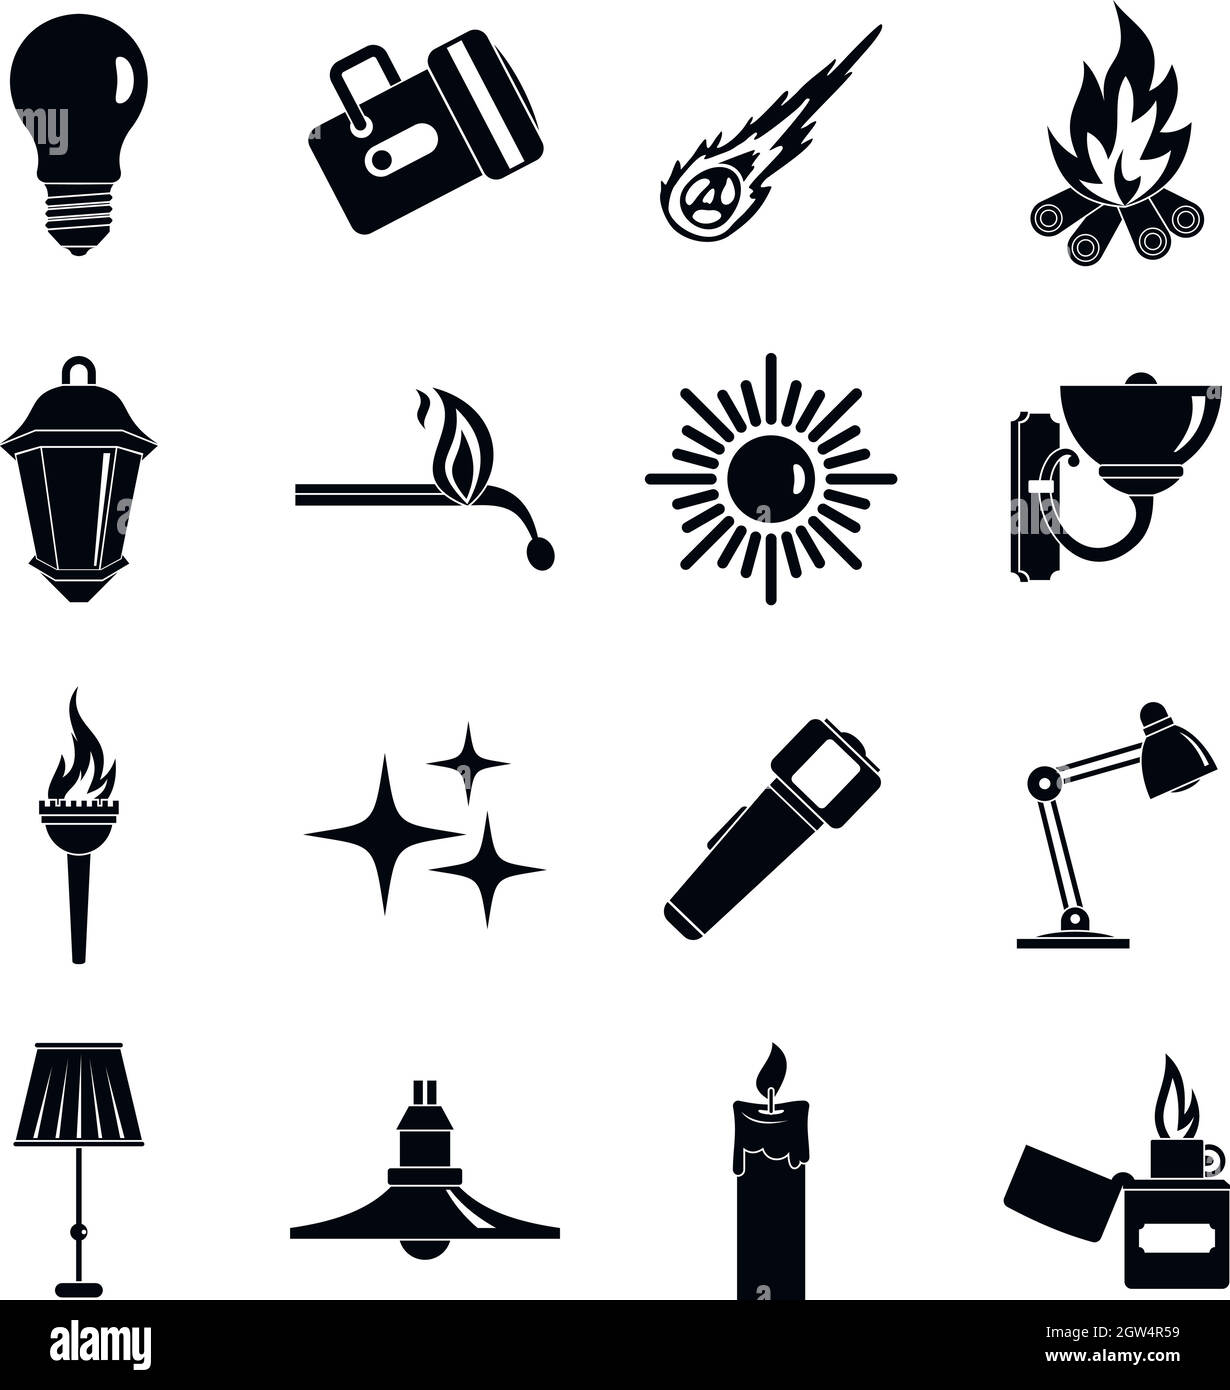 La sorgente di luce simboli set di icone, stile semplice Illustrazione Vettoriale